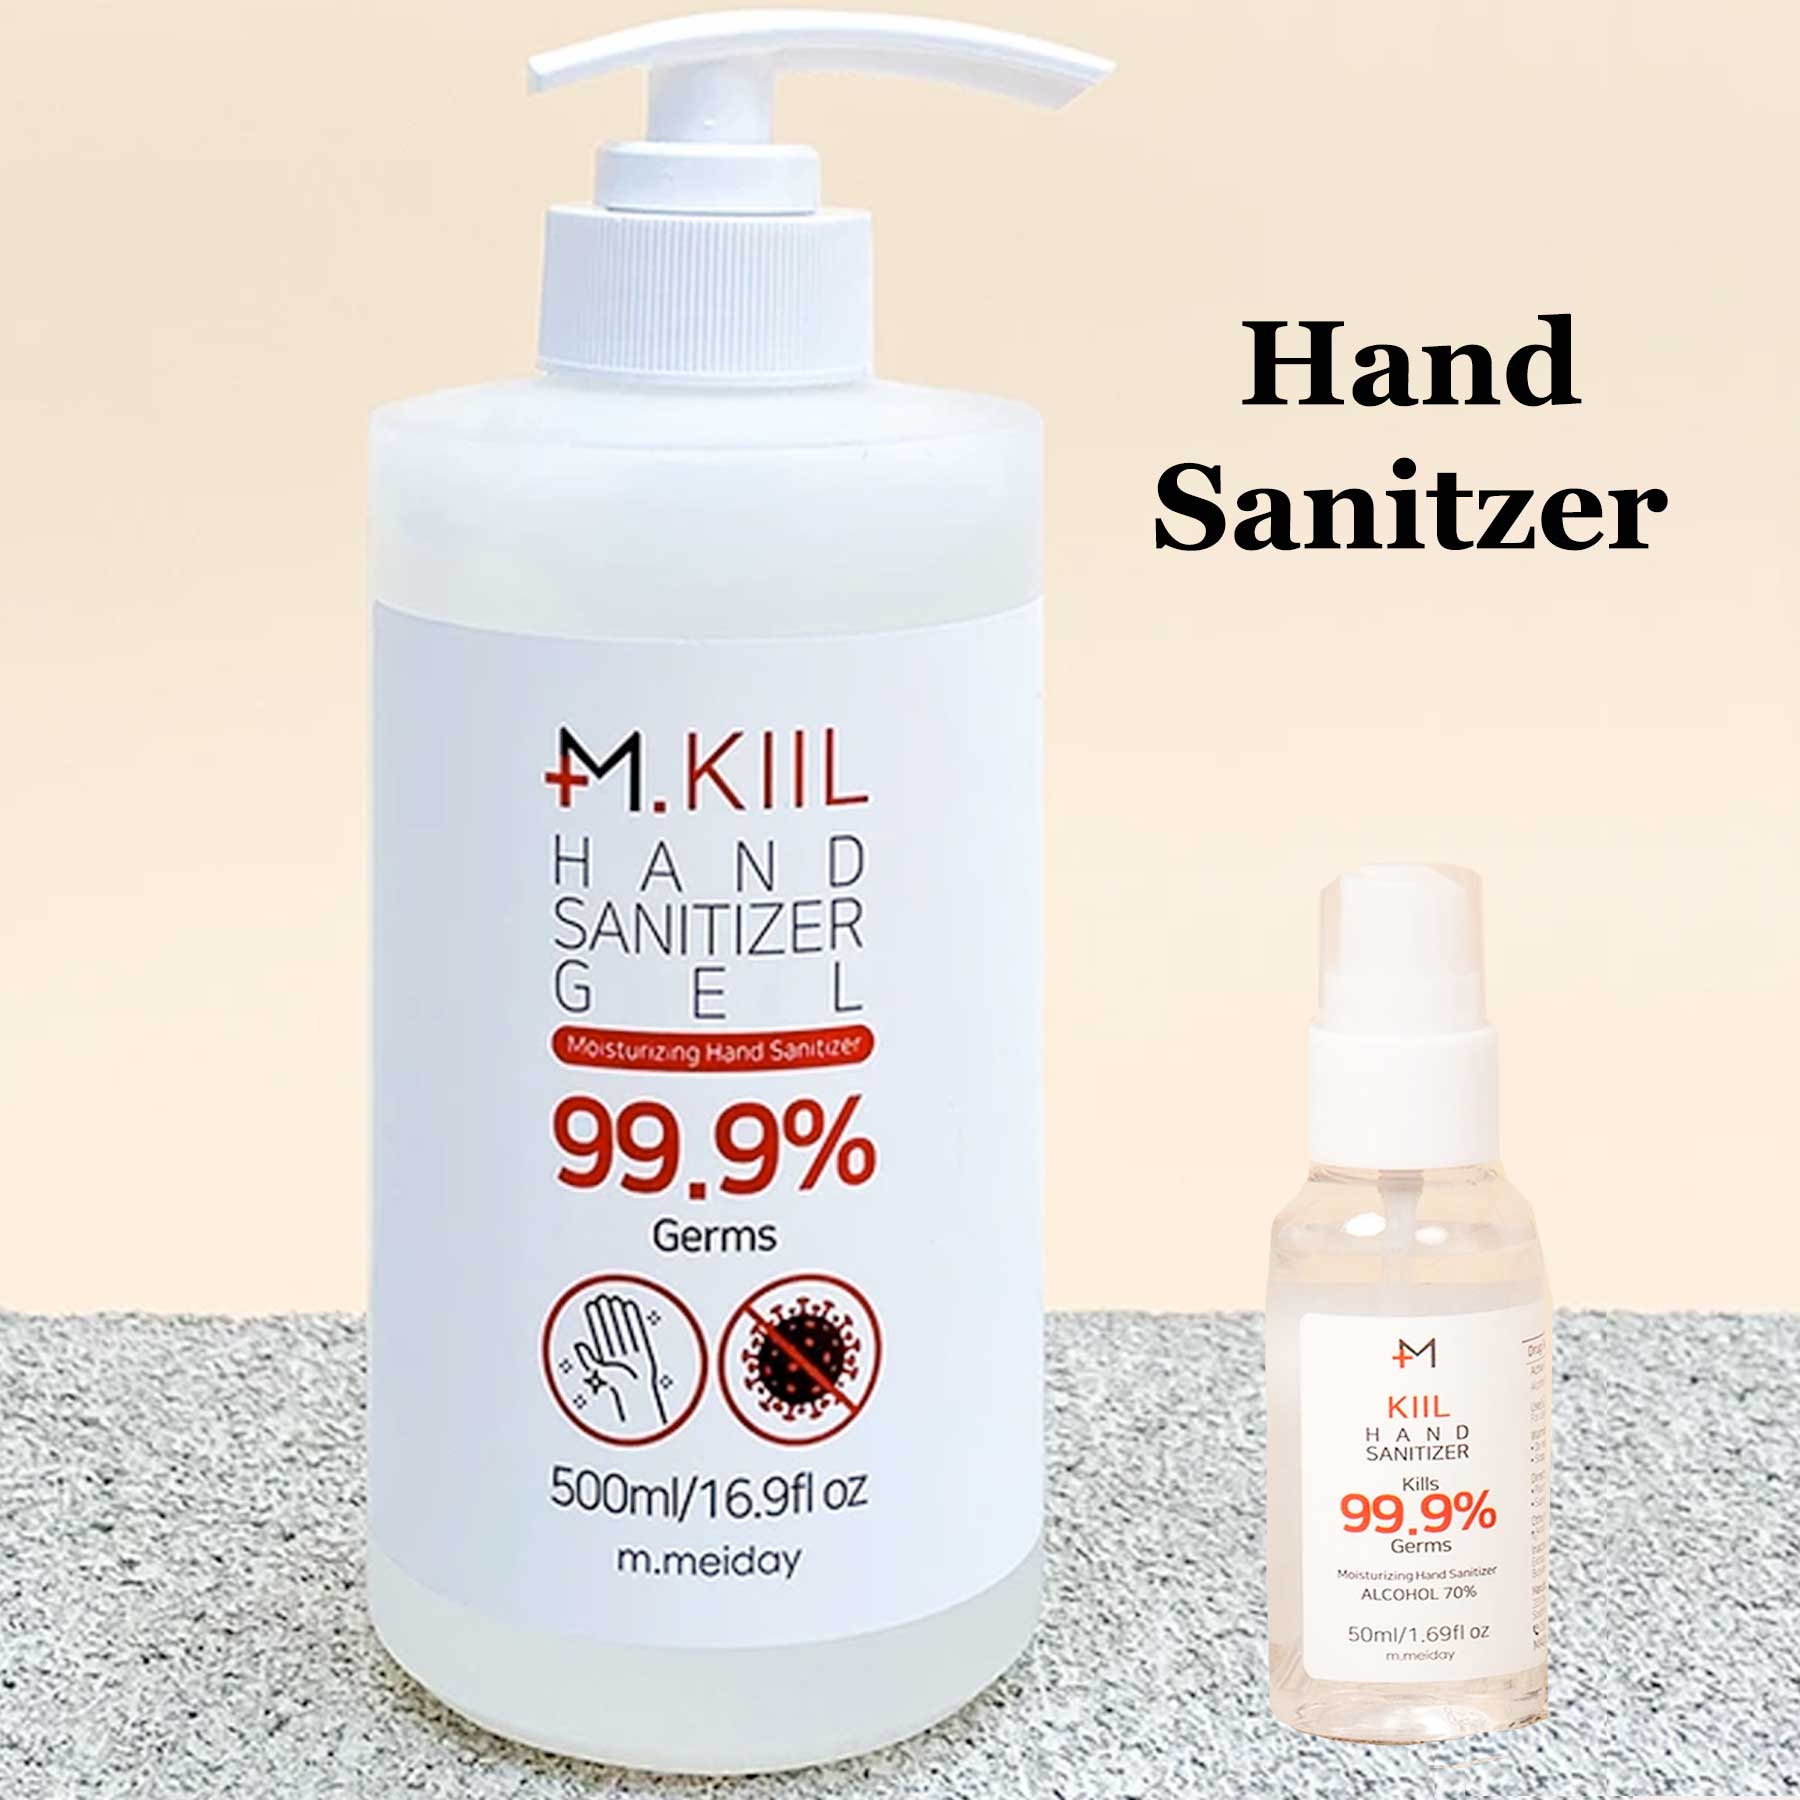 9008 Hand Sanitizer